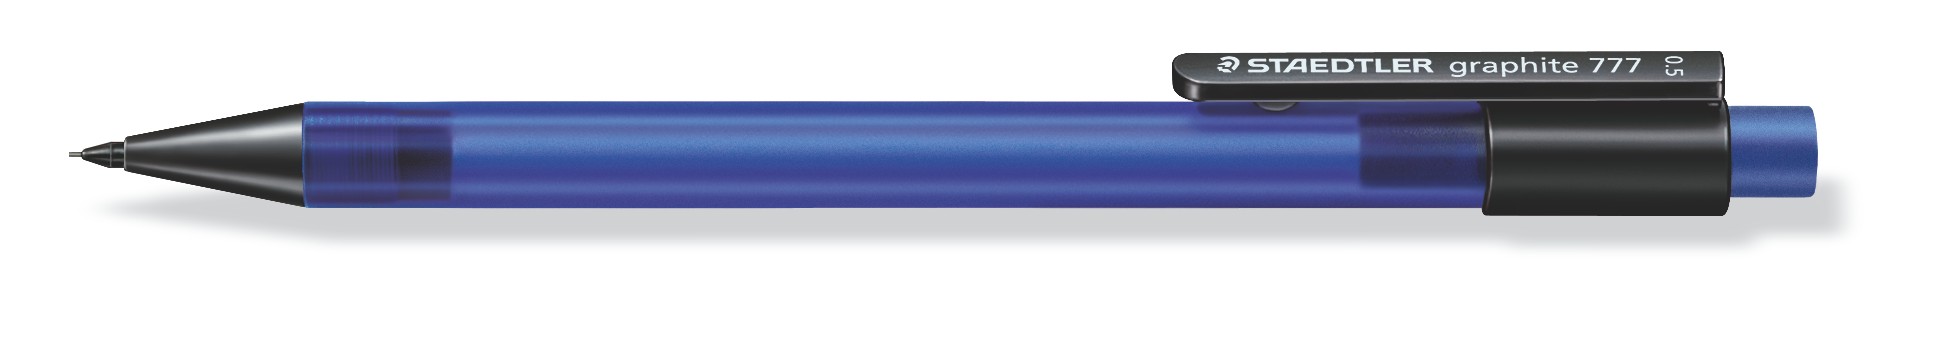 Tehnicka olovka mars 0.5mm